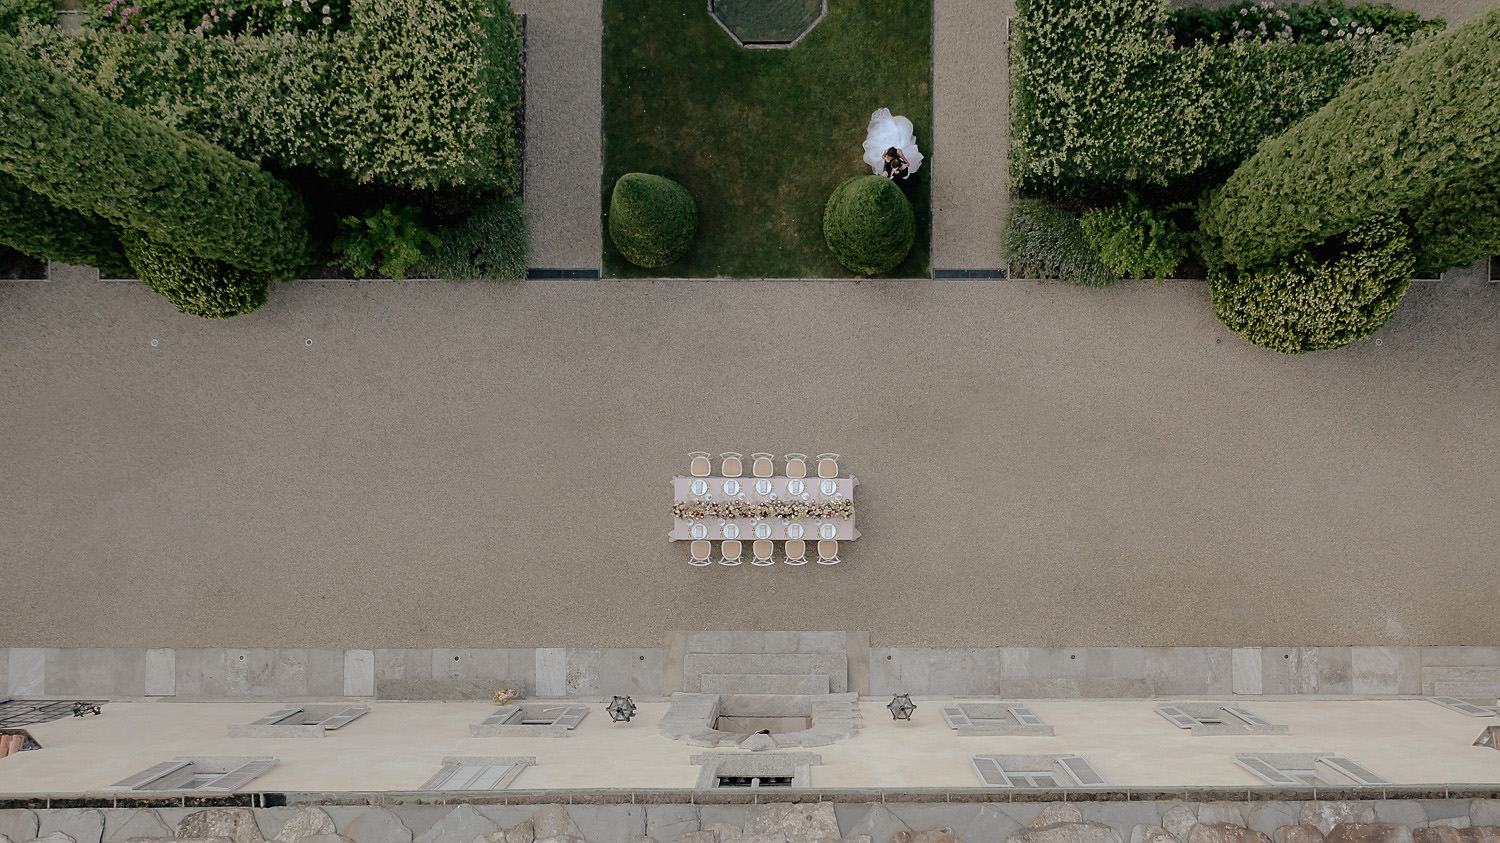 villa balbiano wedding photographer lake como table setup garden aerial view